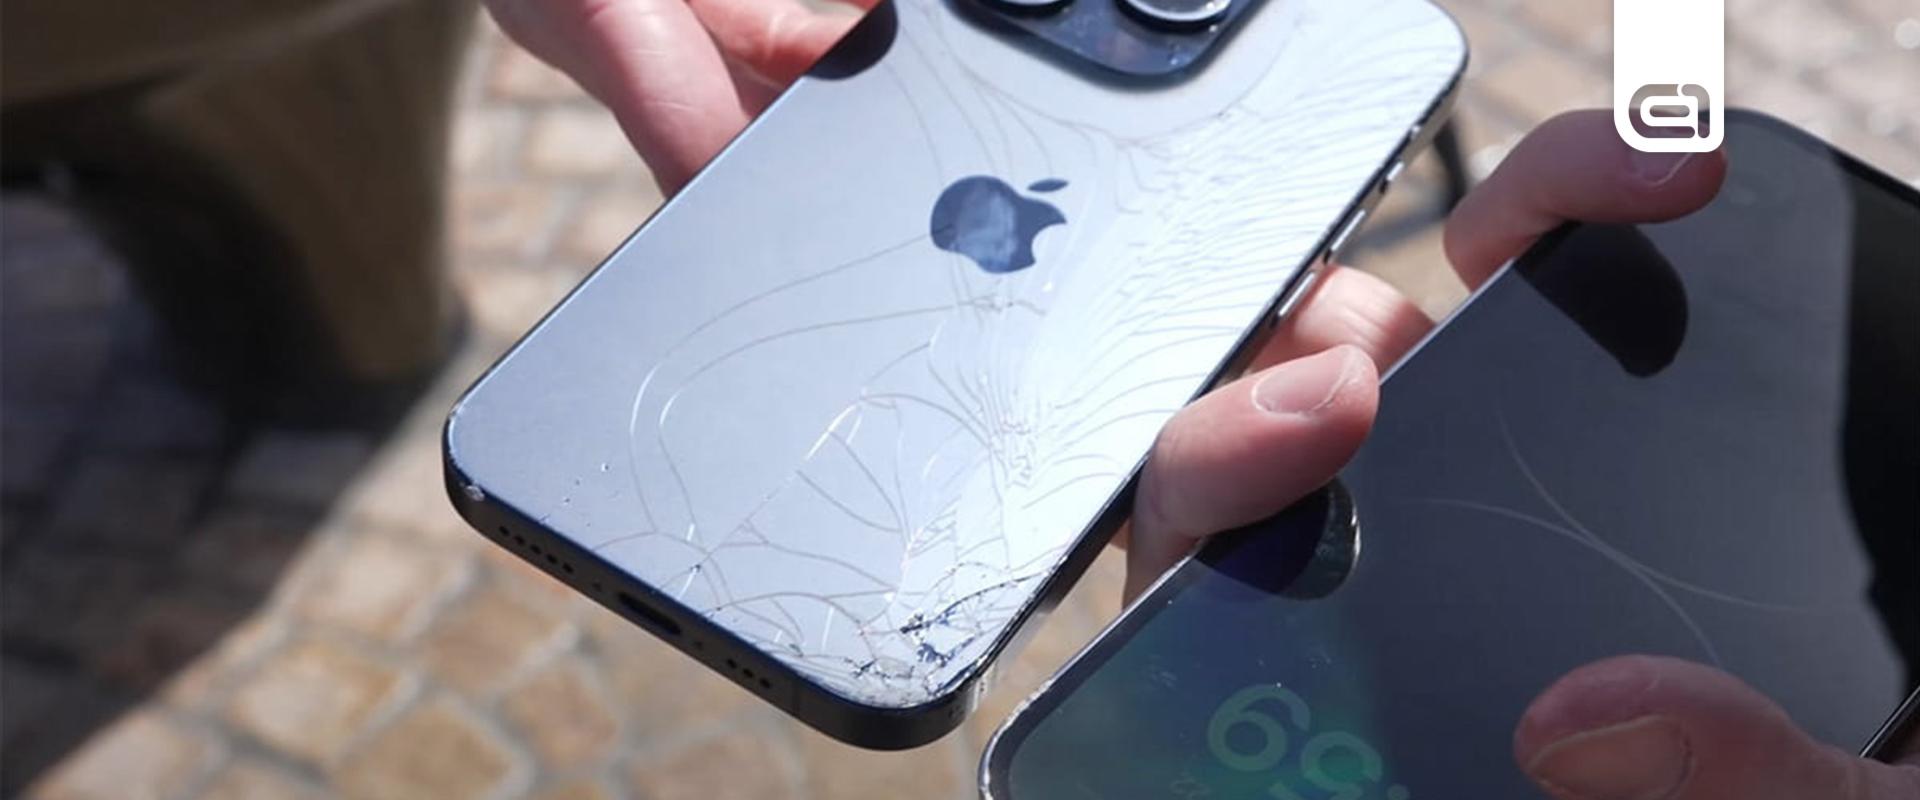 Az Apple-nél komolyan vették, hogy akkor is kiszállítják az új iPhone-okat, ha törik, ha szakad